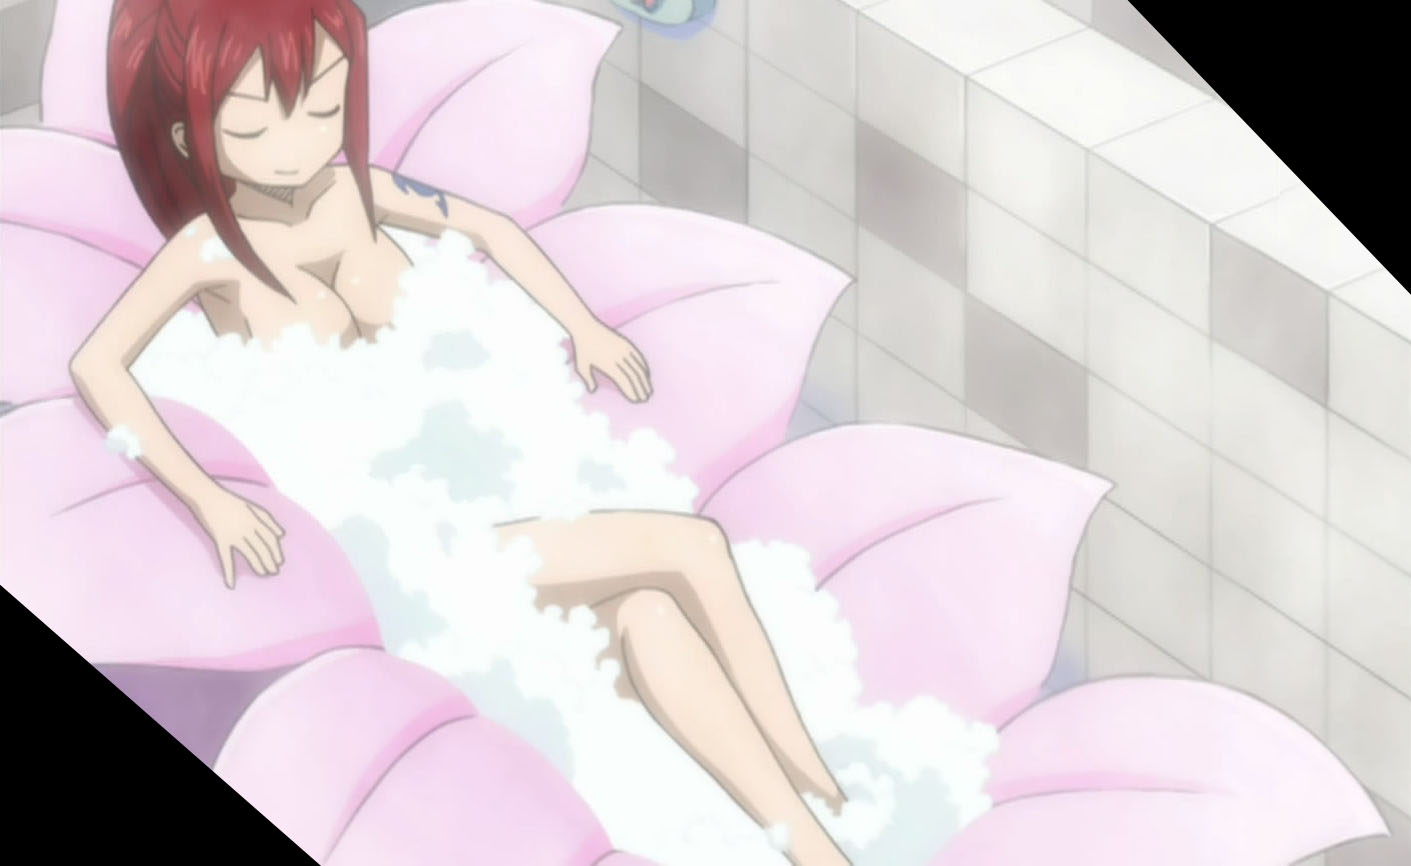 File:Kyokou Suiri 8 1.jpg - Anime Bath Scene Wiki